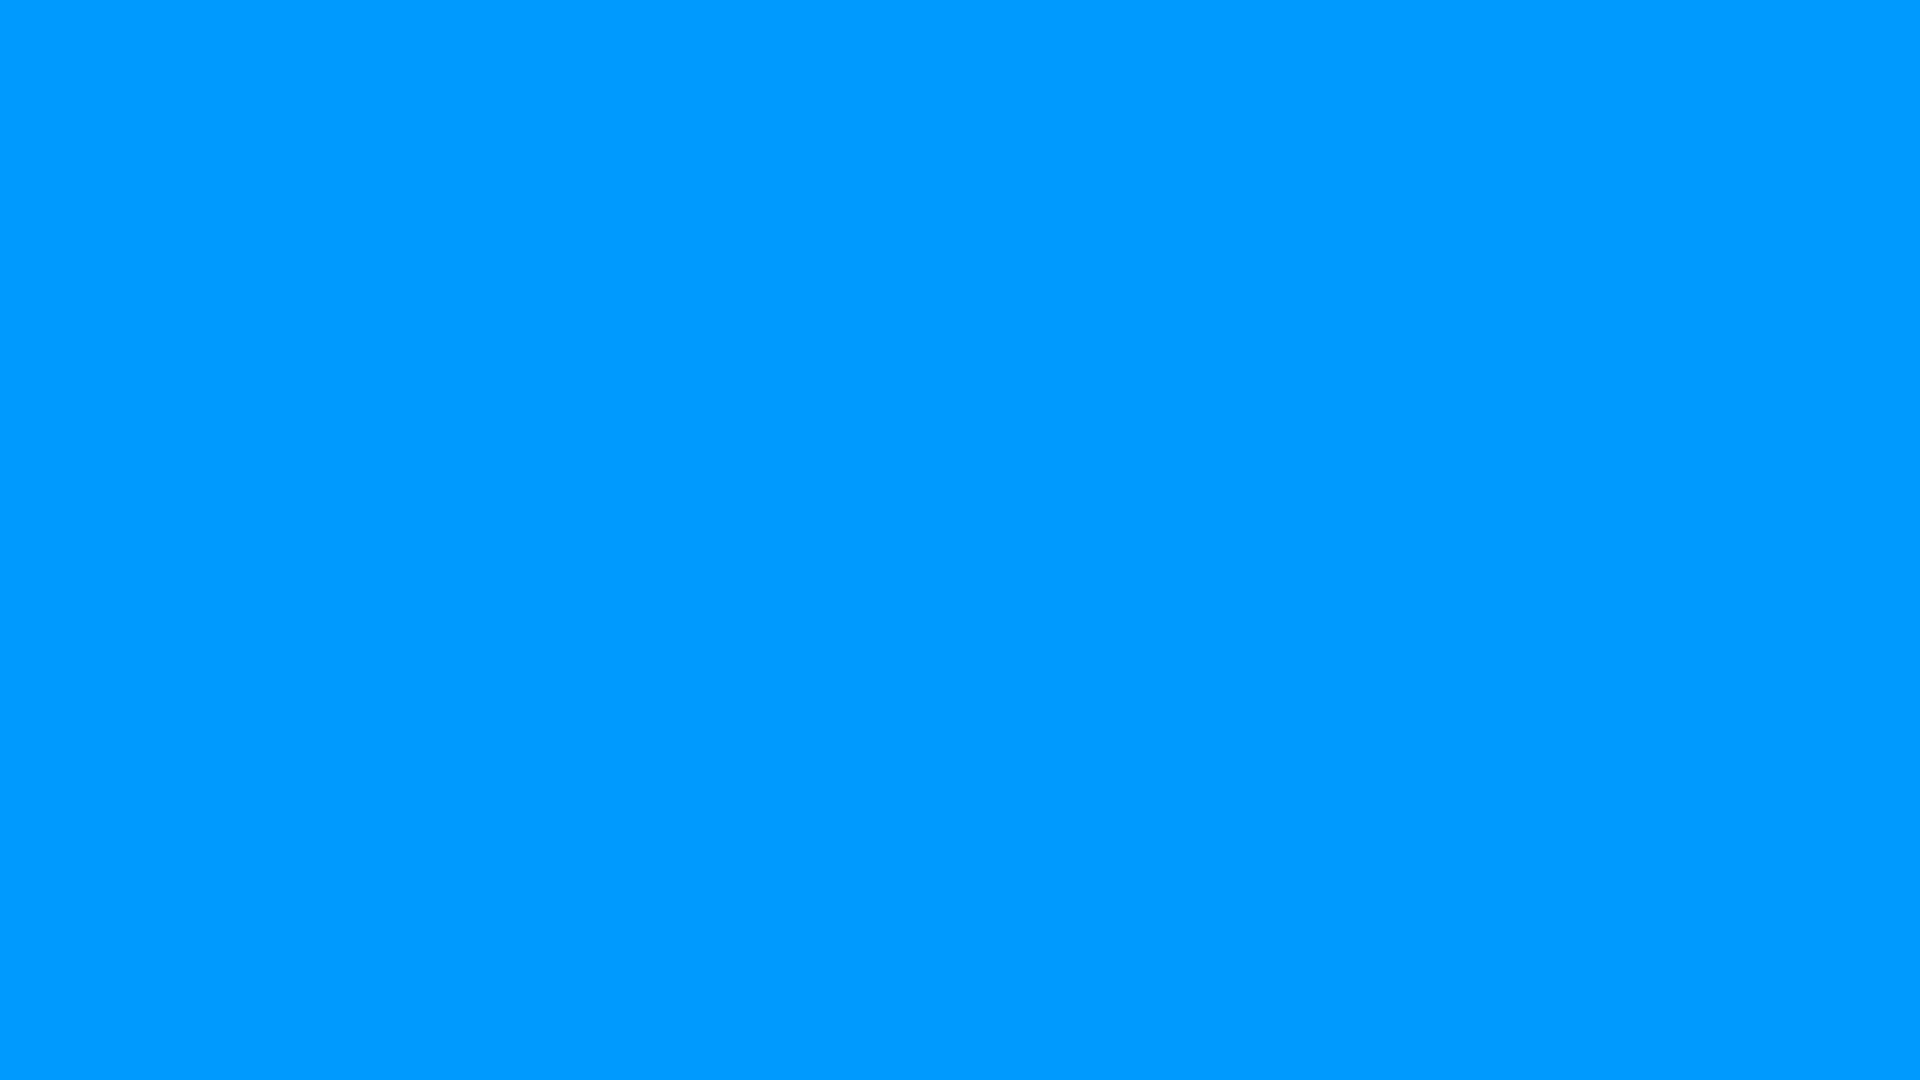 1920x1080 Plain Blue Background